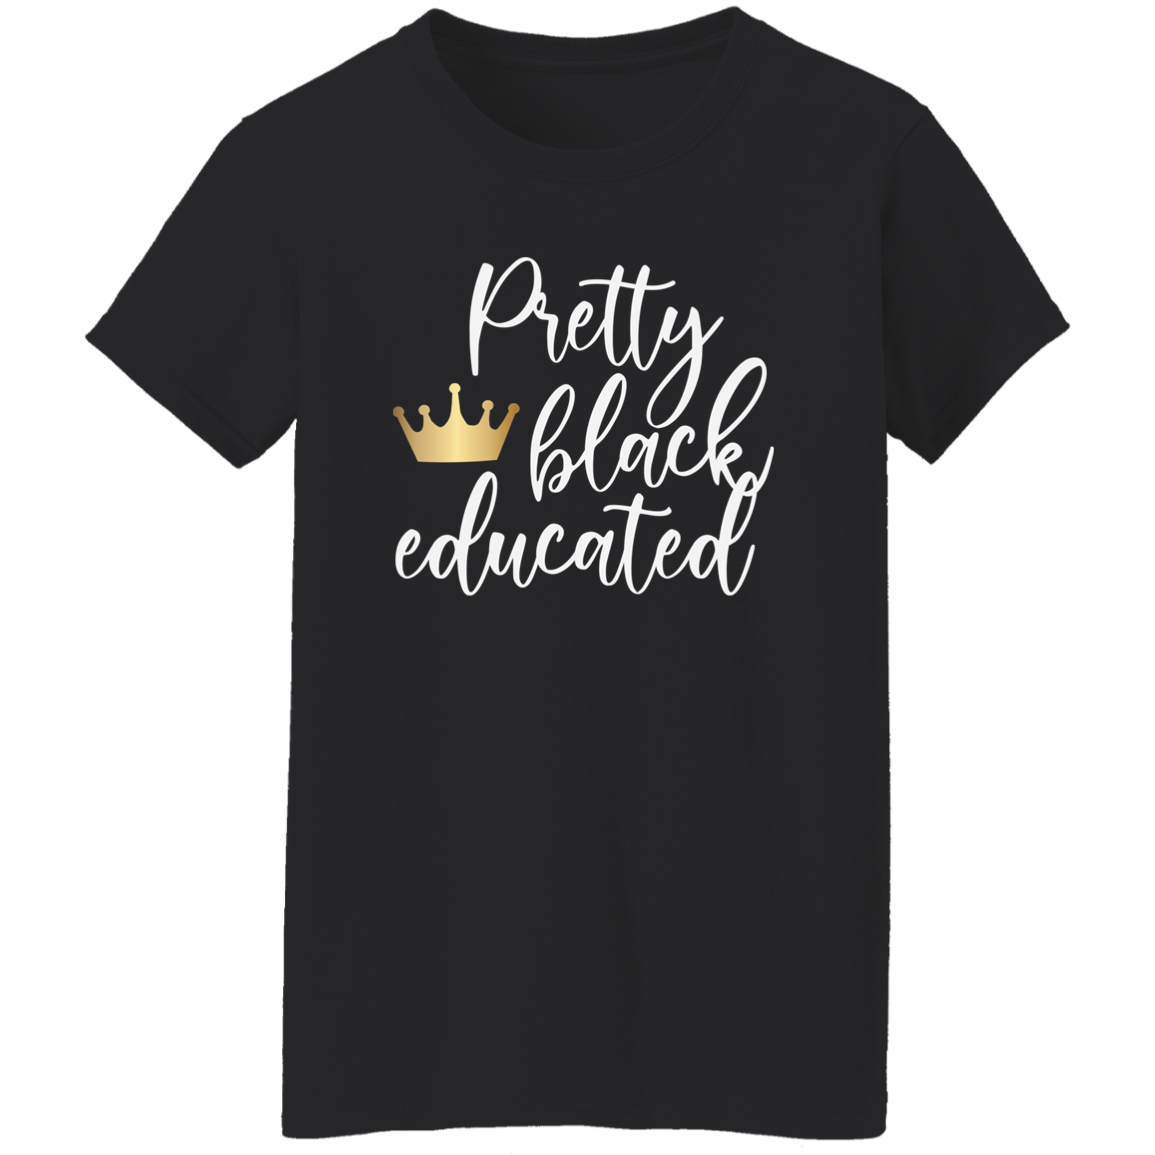 Educated Ladies' 5.3 oz. T-Shirt